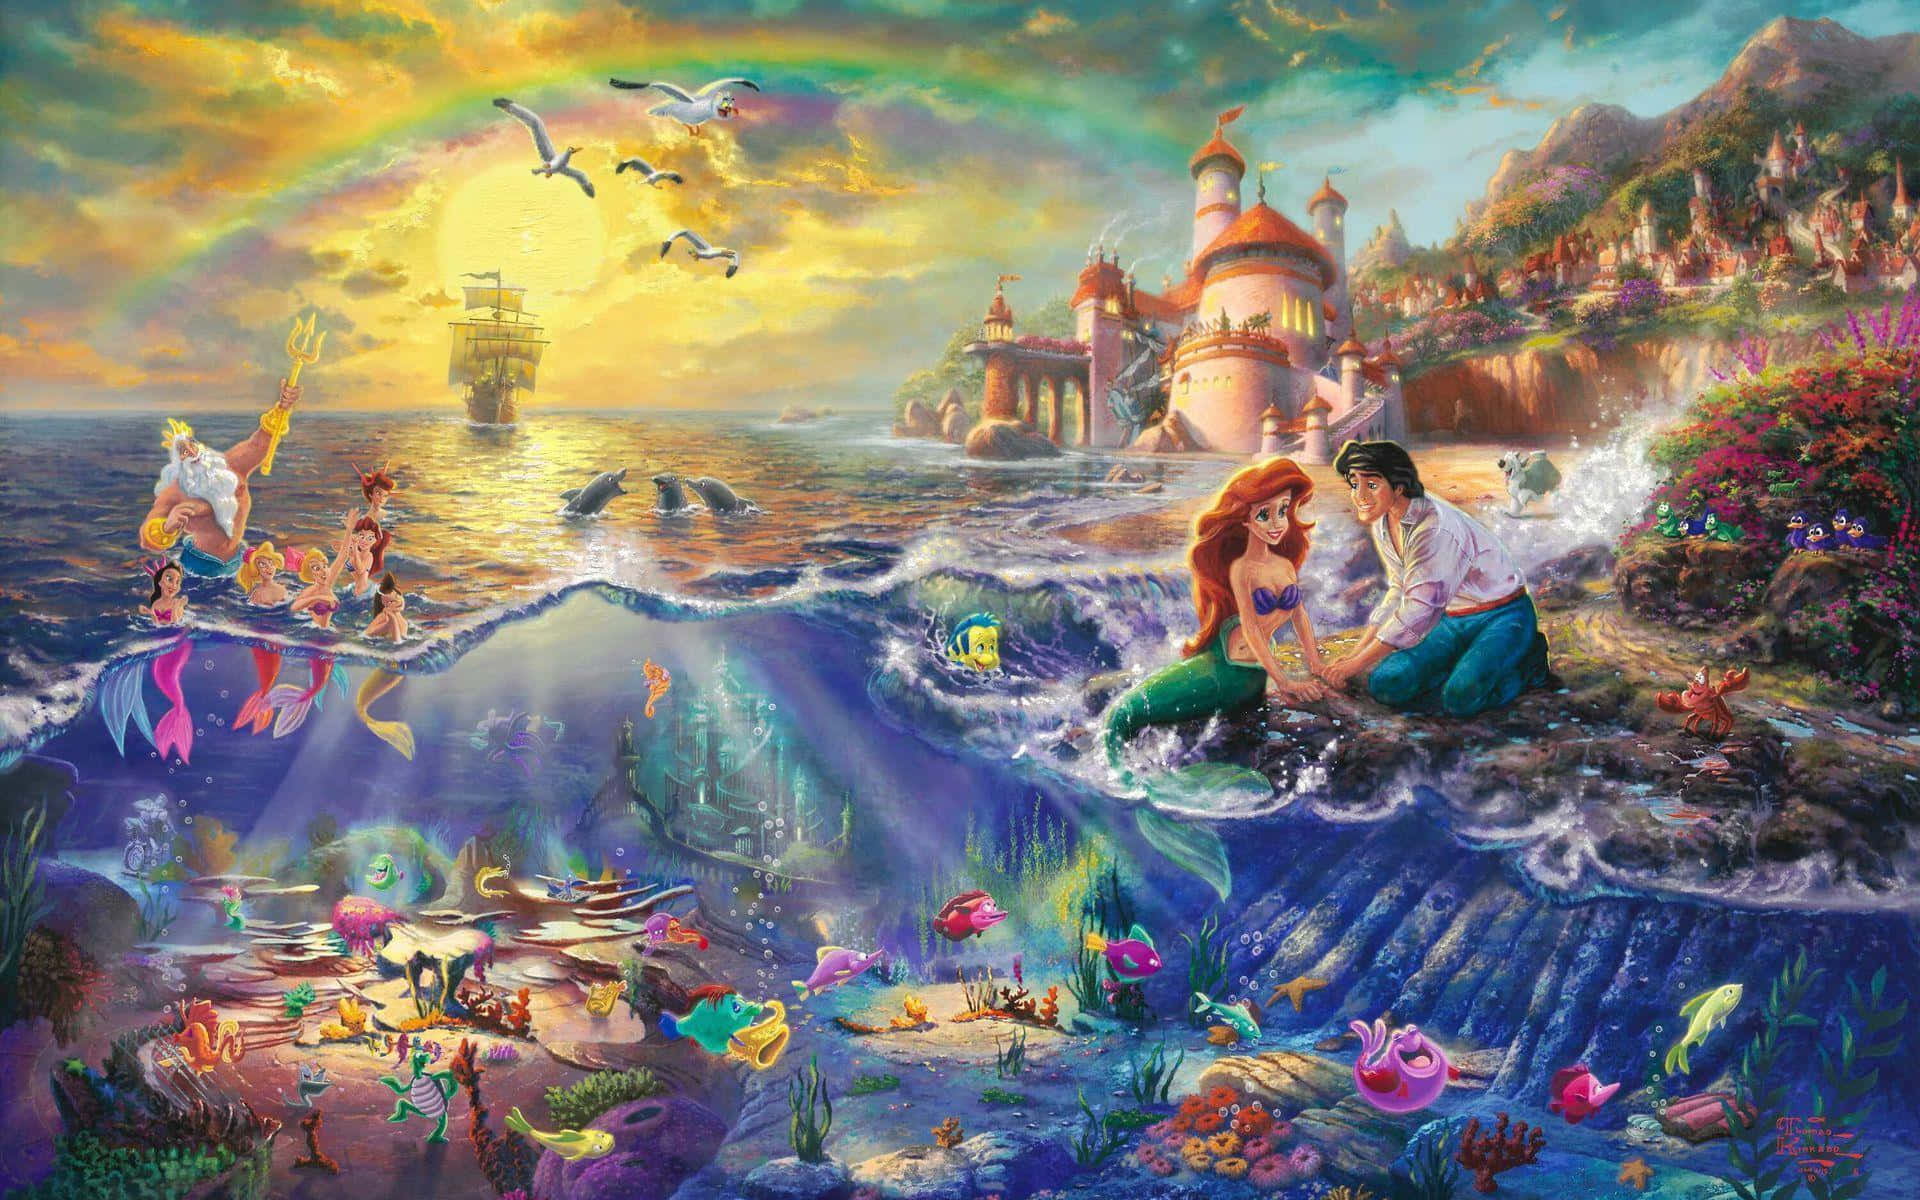 Ariel - the beloved Little Mermaid